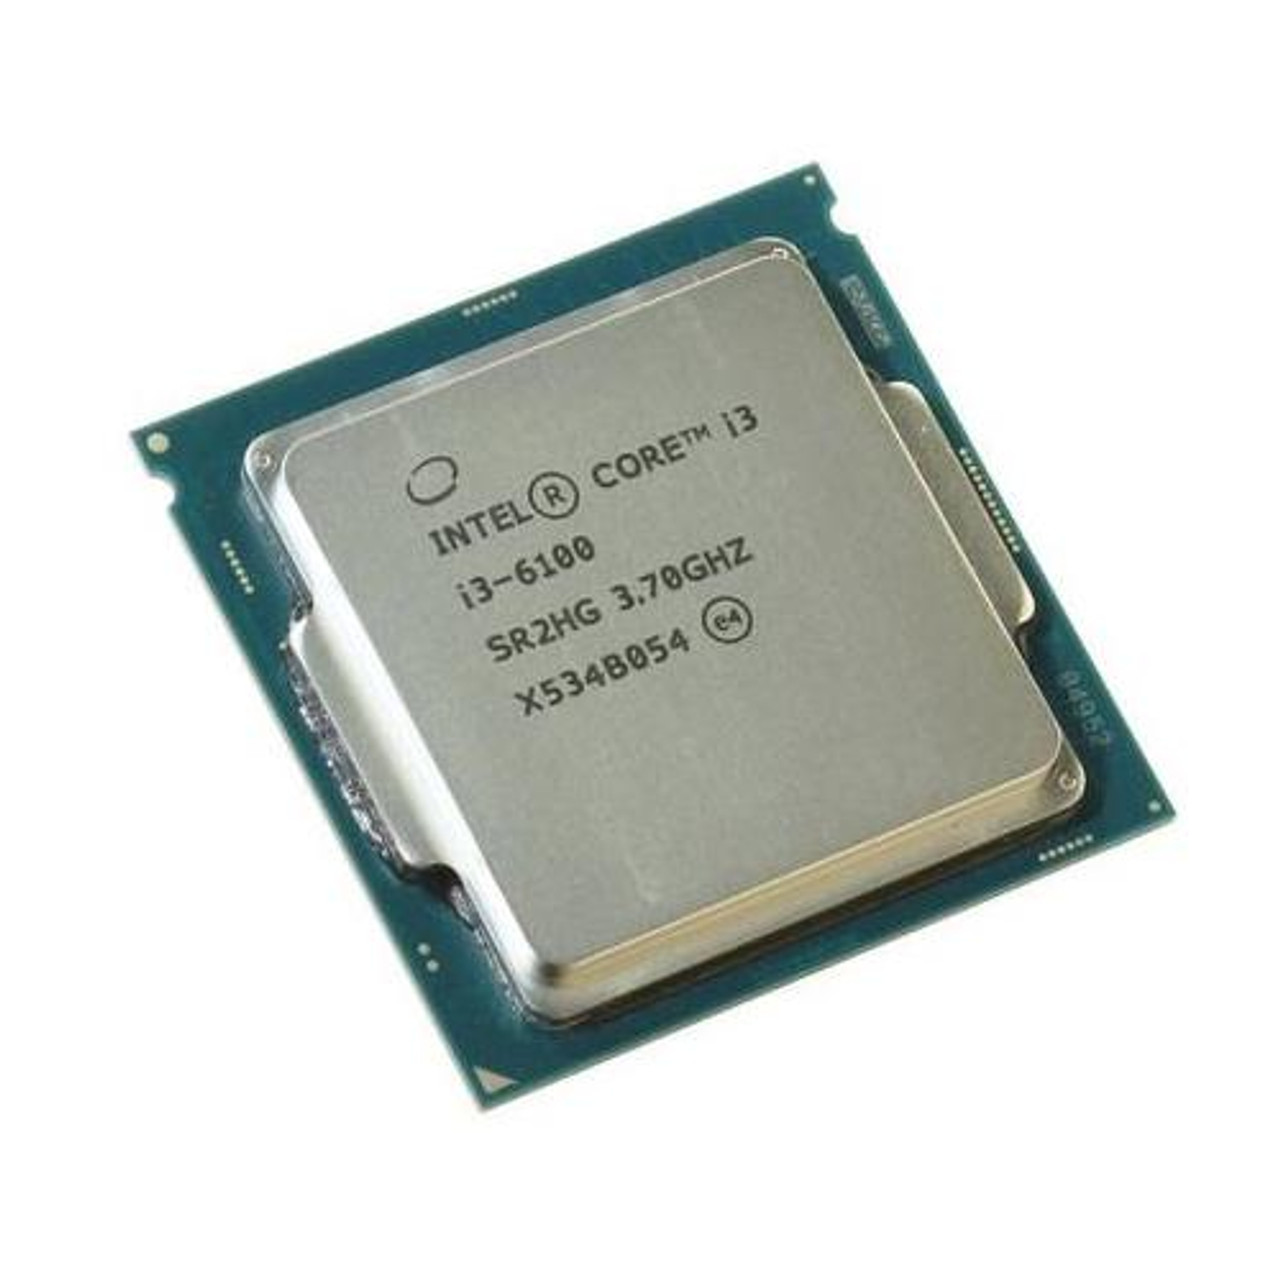 Tot stand brengen Spelling noot i3-6100 Intel Core i3 Desktop 3.70 GHz Processor Unboxed OEM